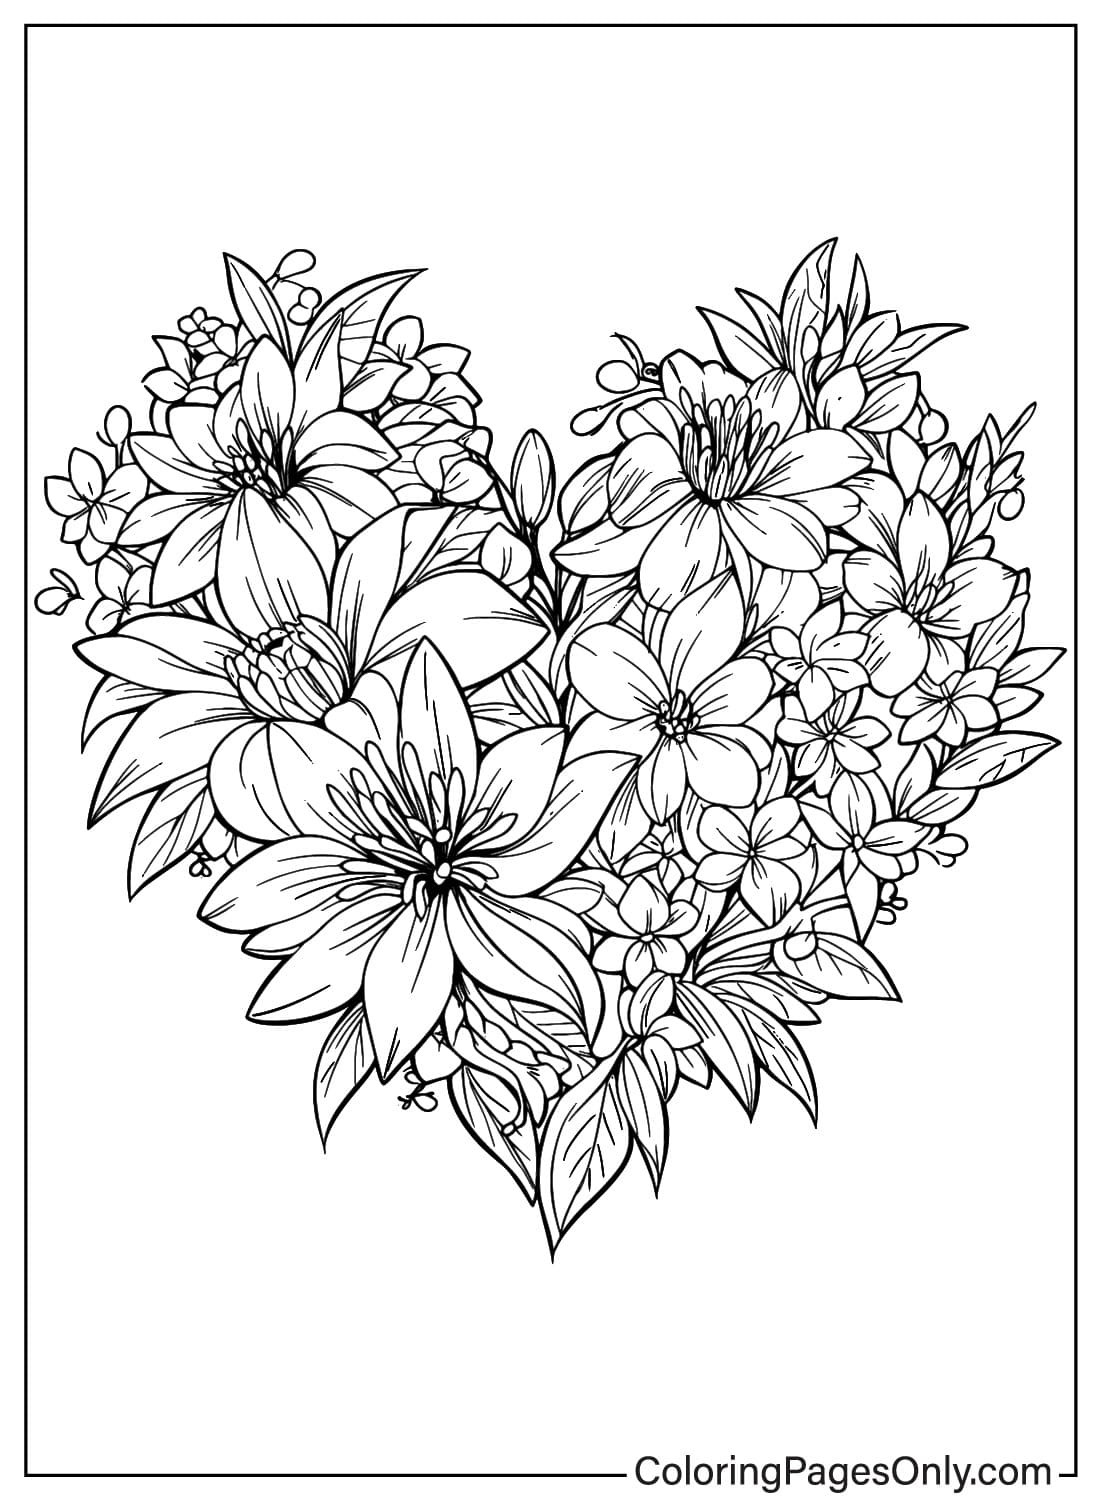 Página para colorear de flor de corazón de Heart